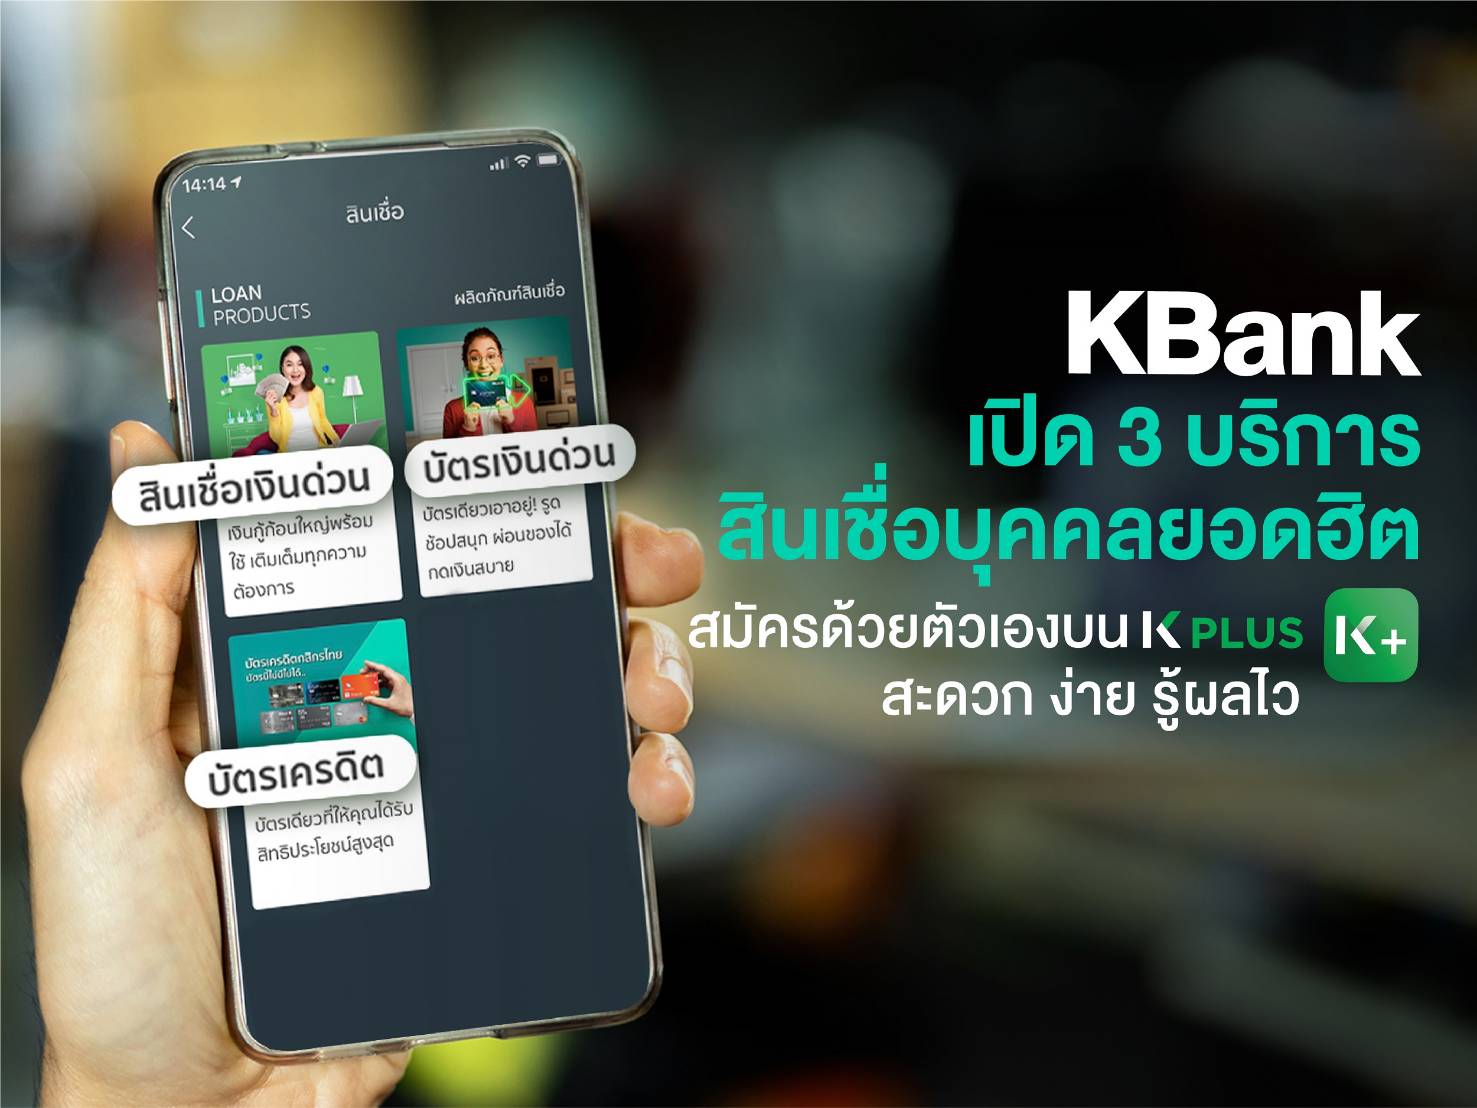 กสิกรไทย เปิด 3 บริการขอสินเชื่อบุคคลผ่าน K PLUS รู้ผล 15 นาที – การเงิน